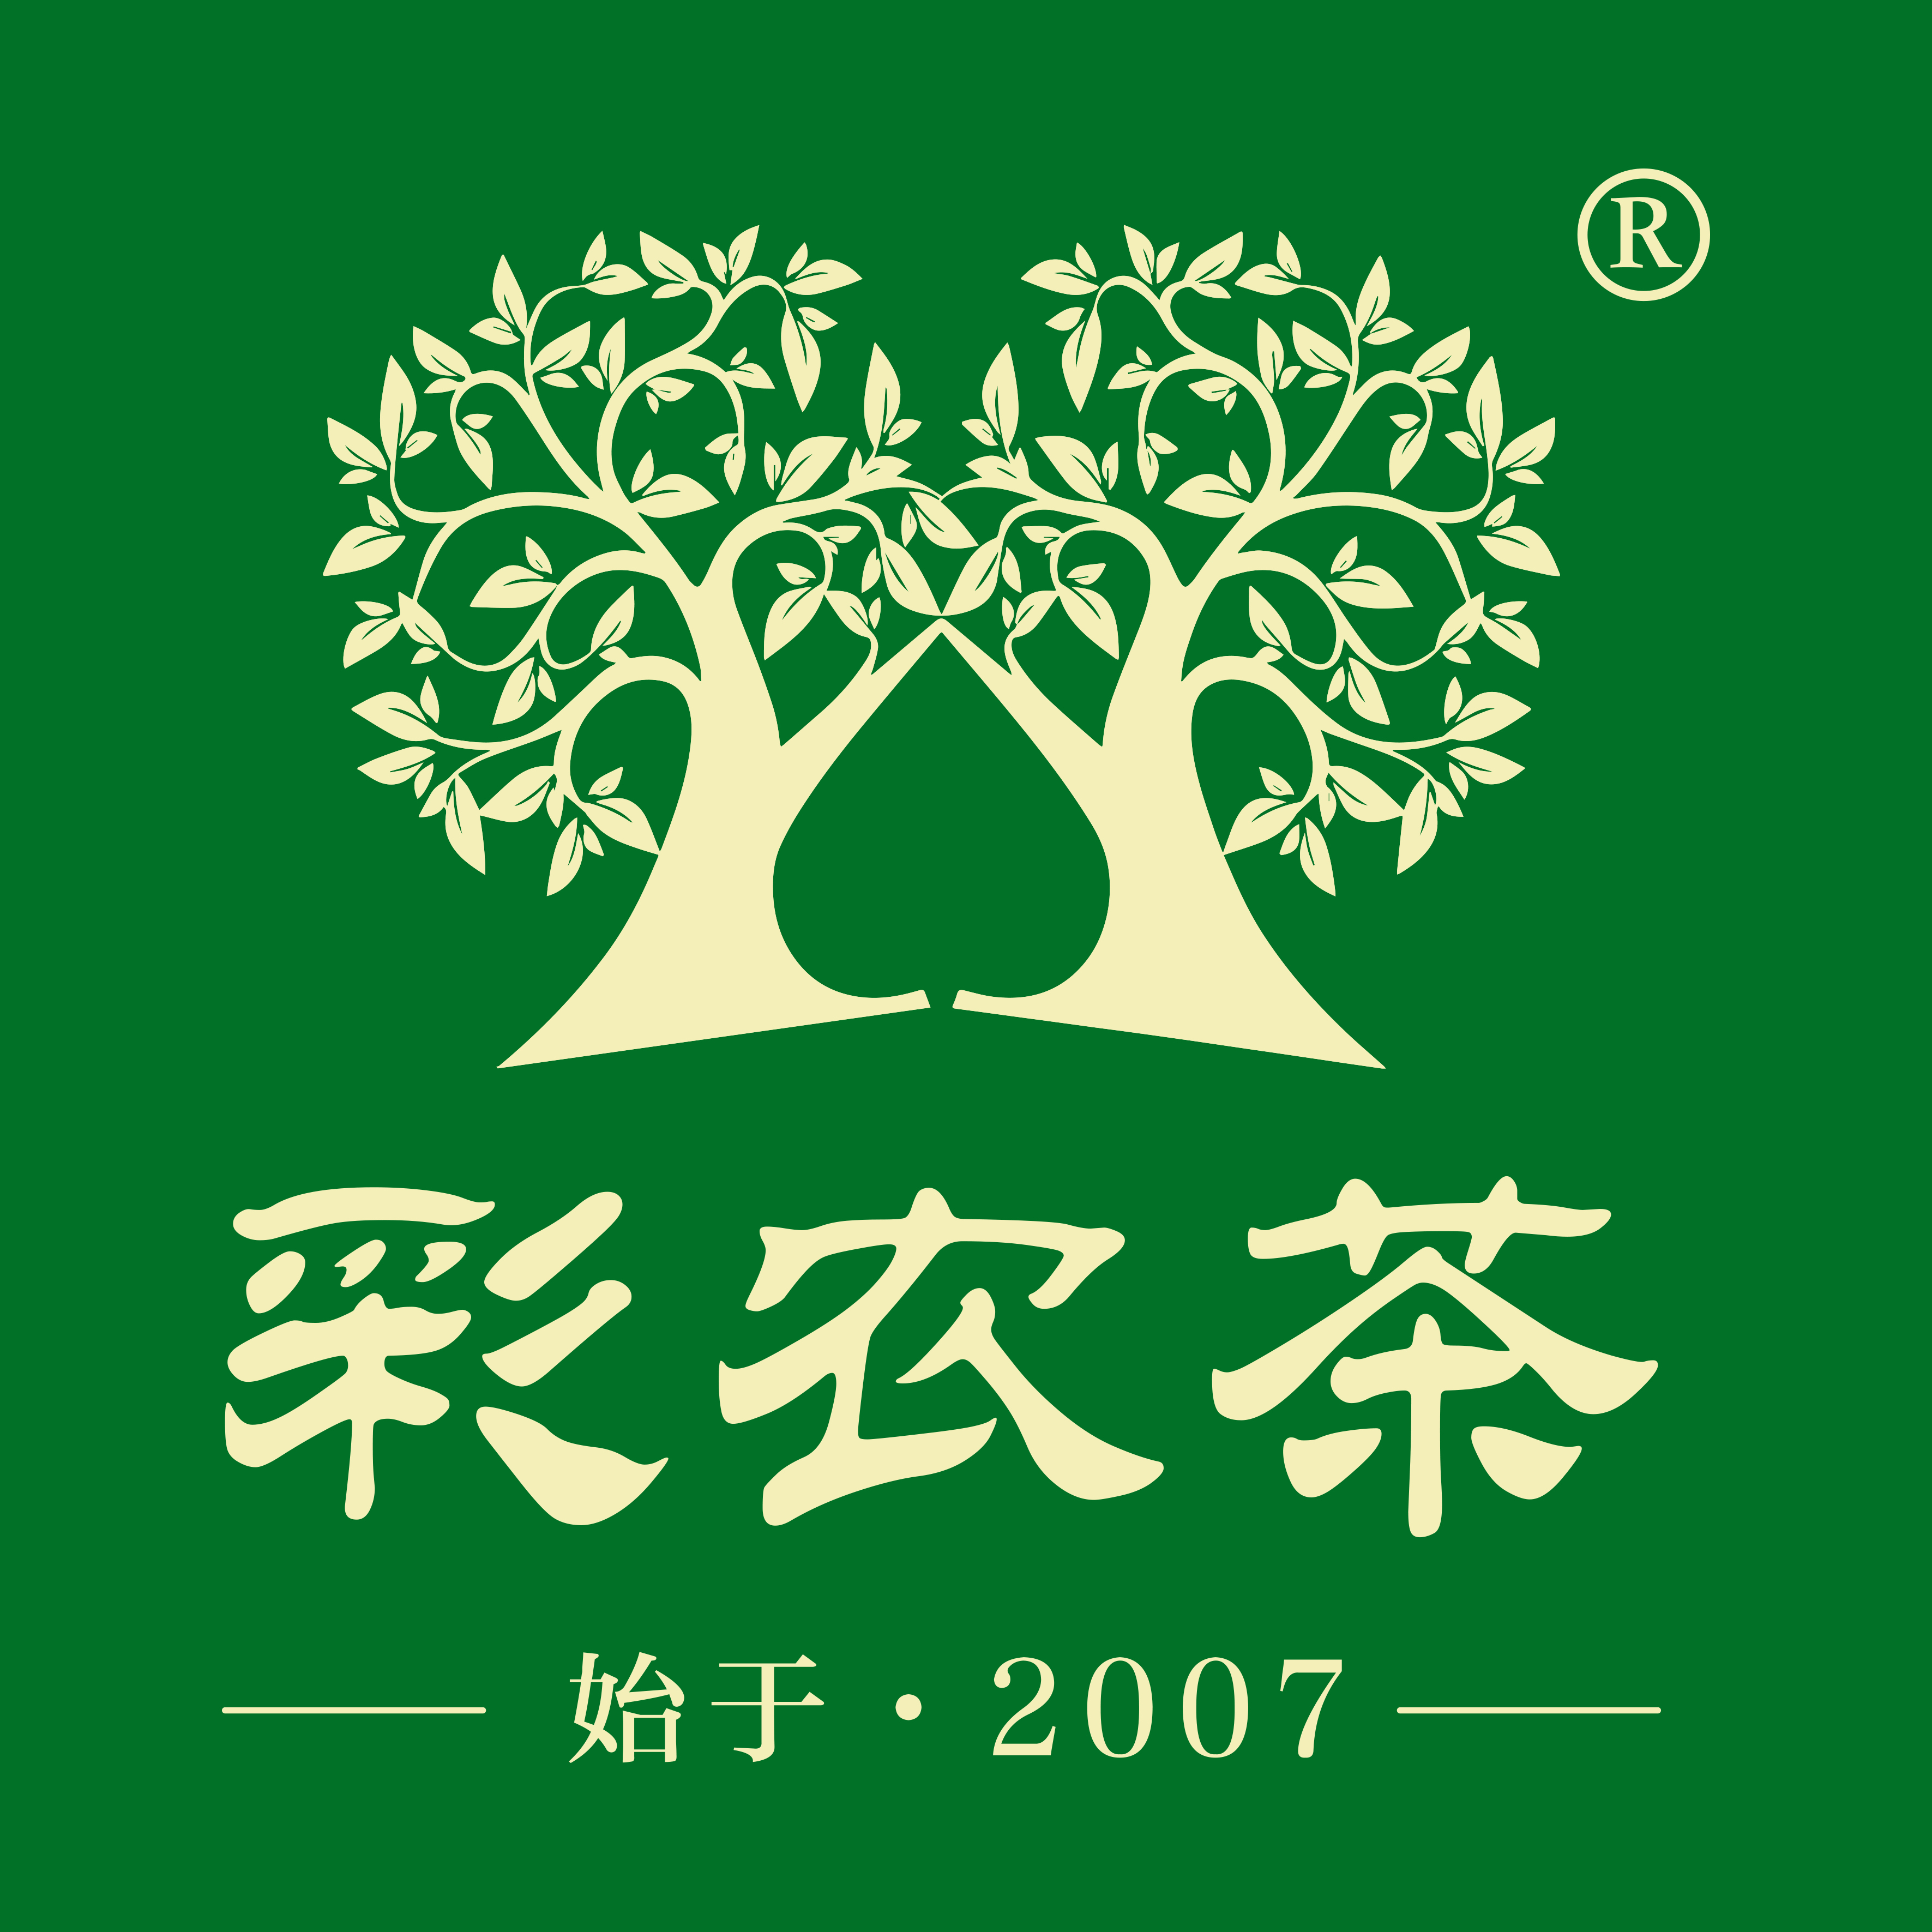 彩农茶